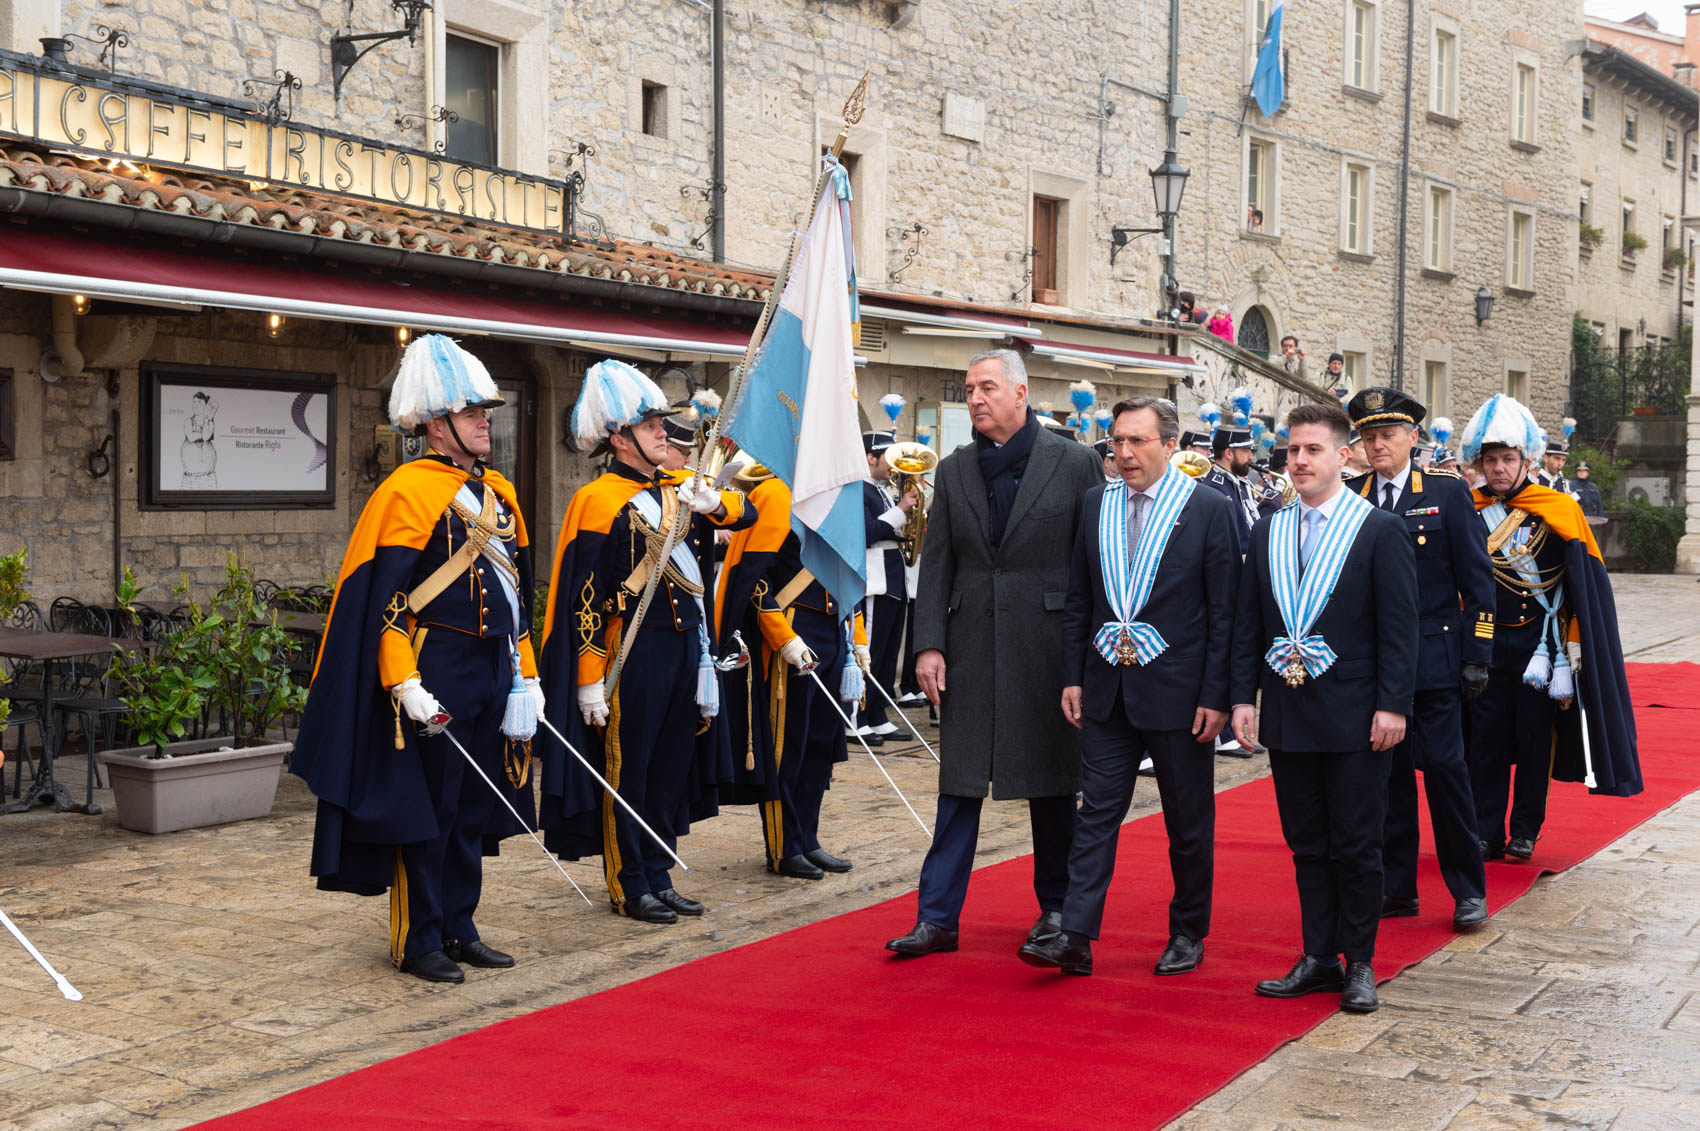 Prima visita di Stato a San Marino per il presidente del Montenegro